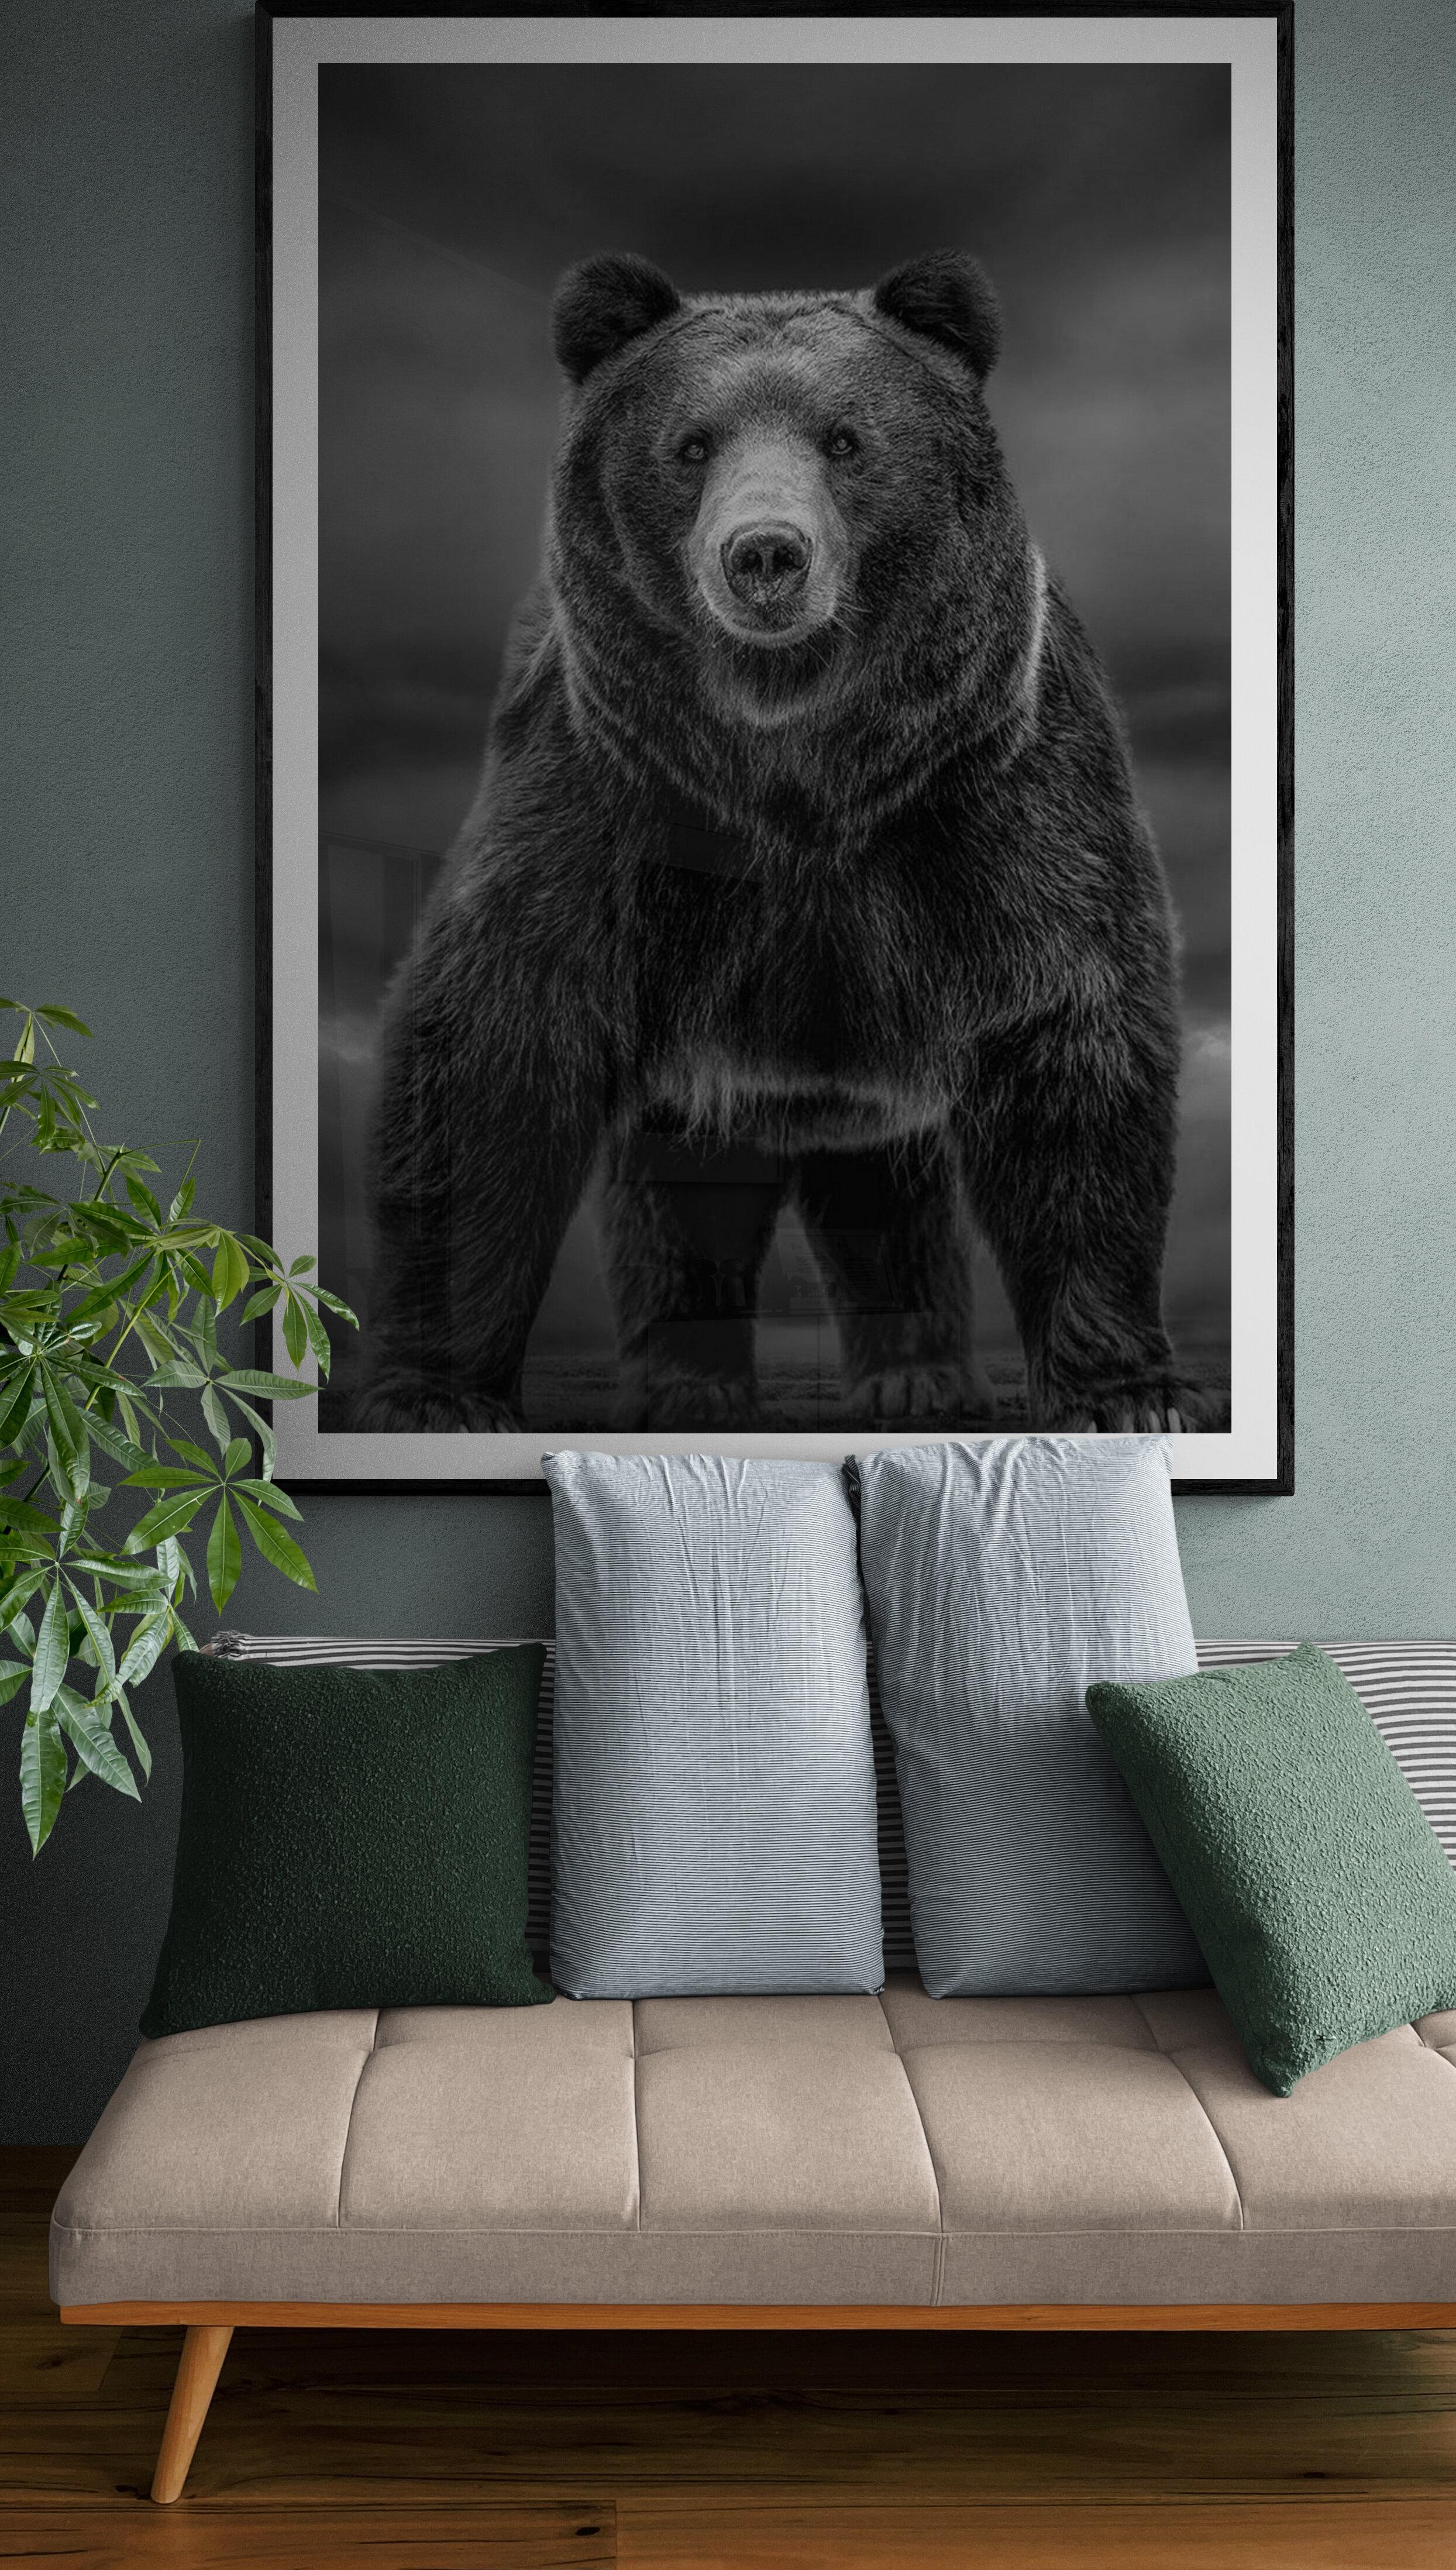 Il s'agit d'une photographie contemporaine d'un ours Kodiak.  Ceci a été tourné sur l'île de Kodiak en 2019. 
90x60 
Edition de 7
Signé et numéroté
Papier pigmentaire d'archivage
Encadrement disponible. Renseignez-vous sur les tarifs. 


Shane